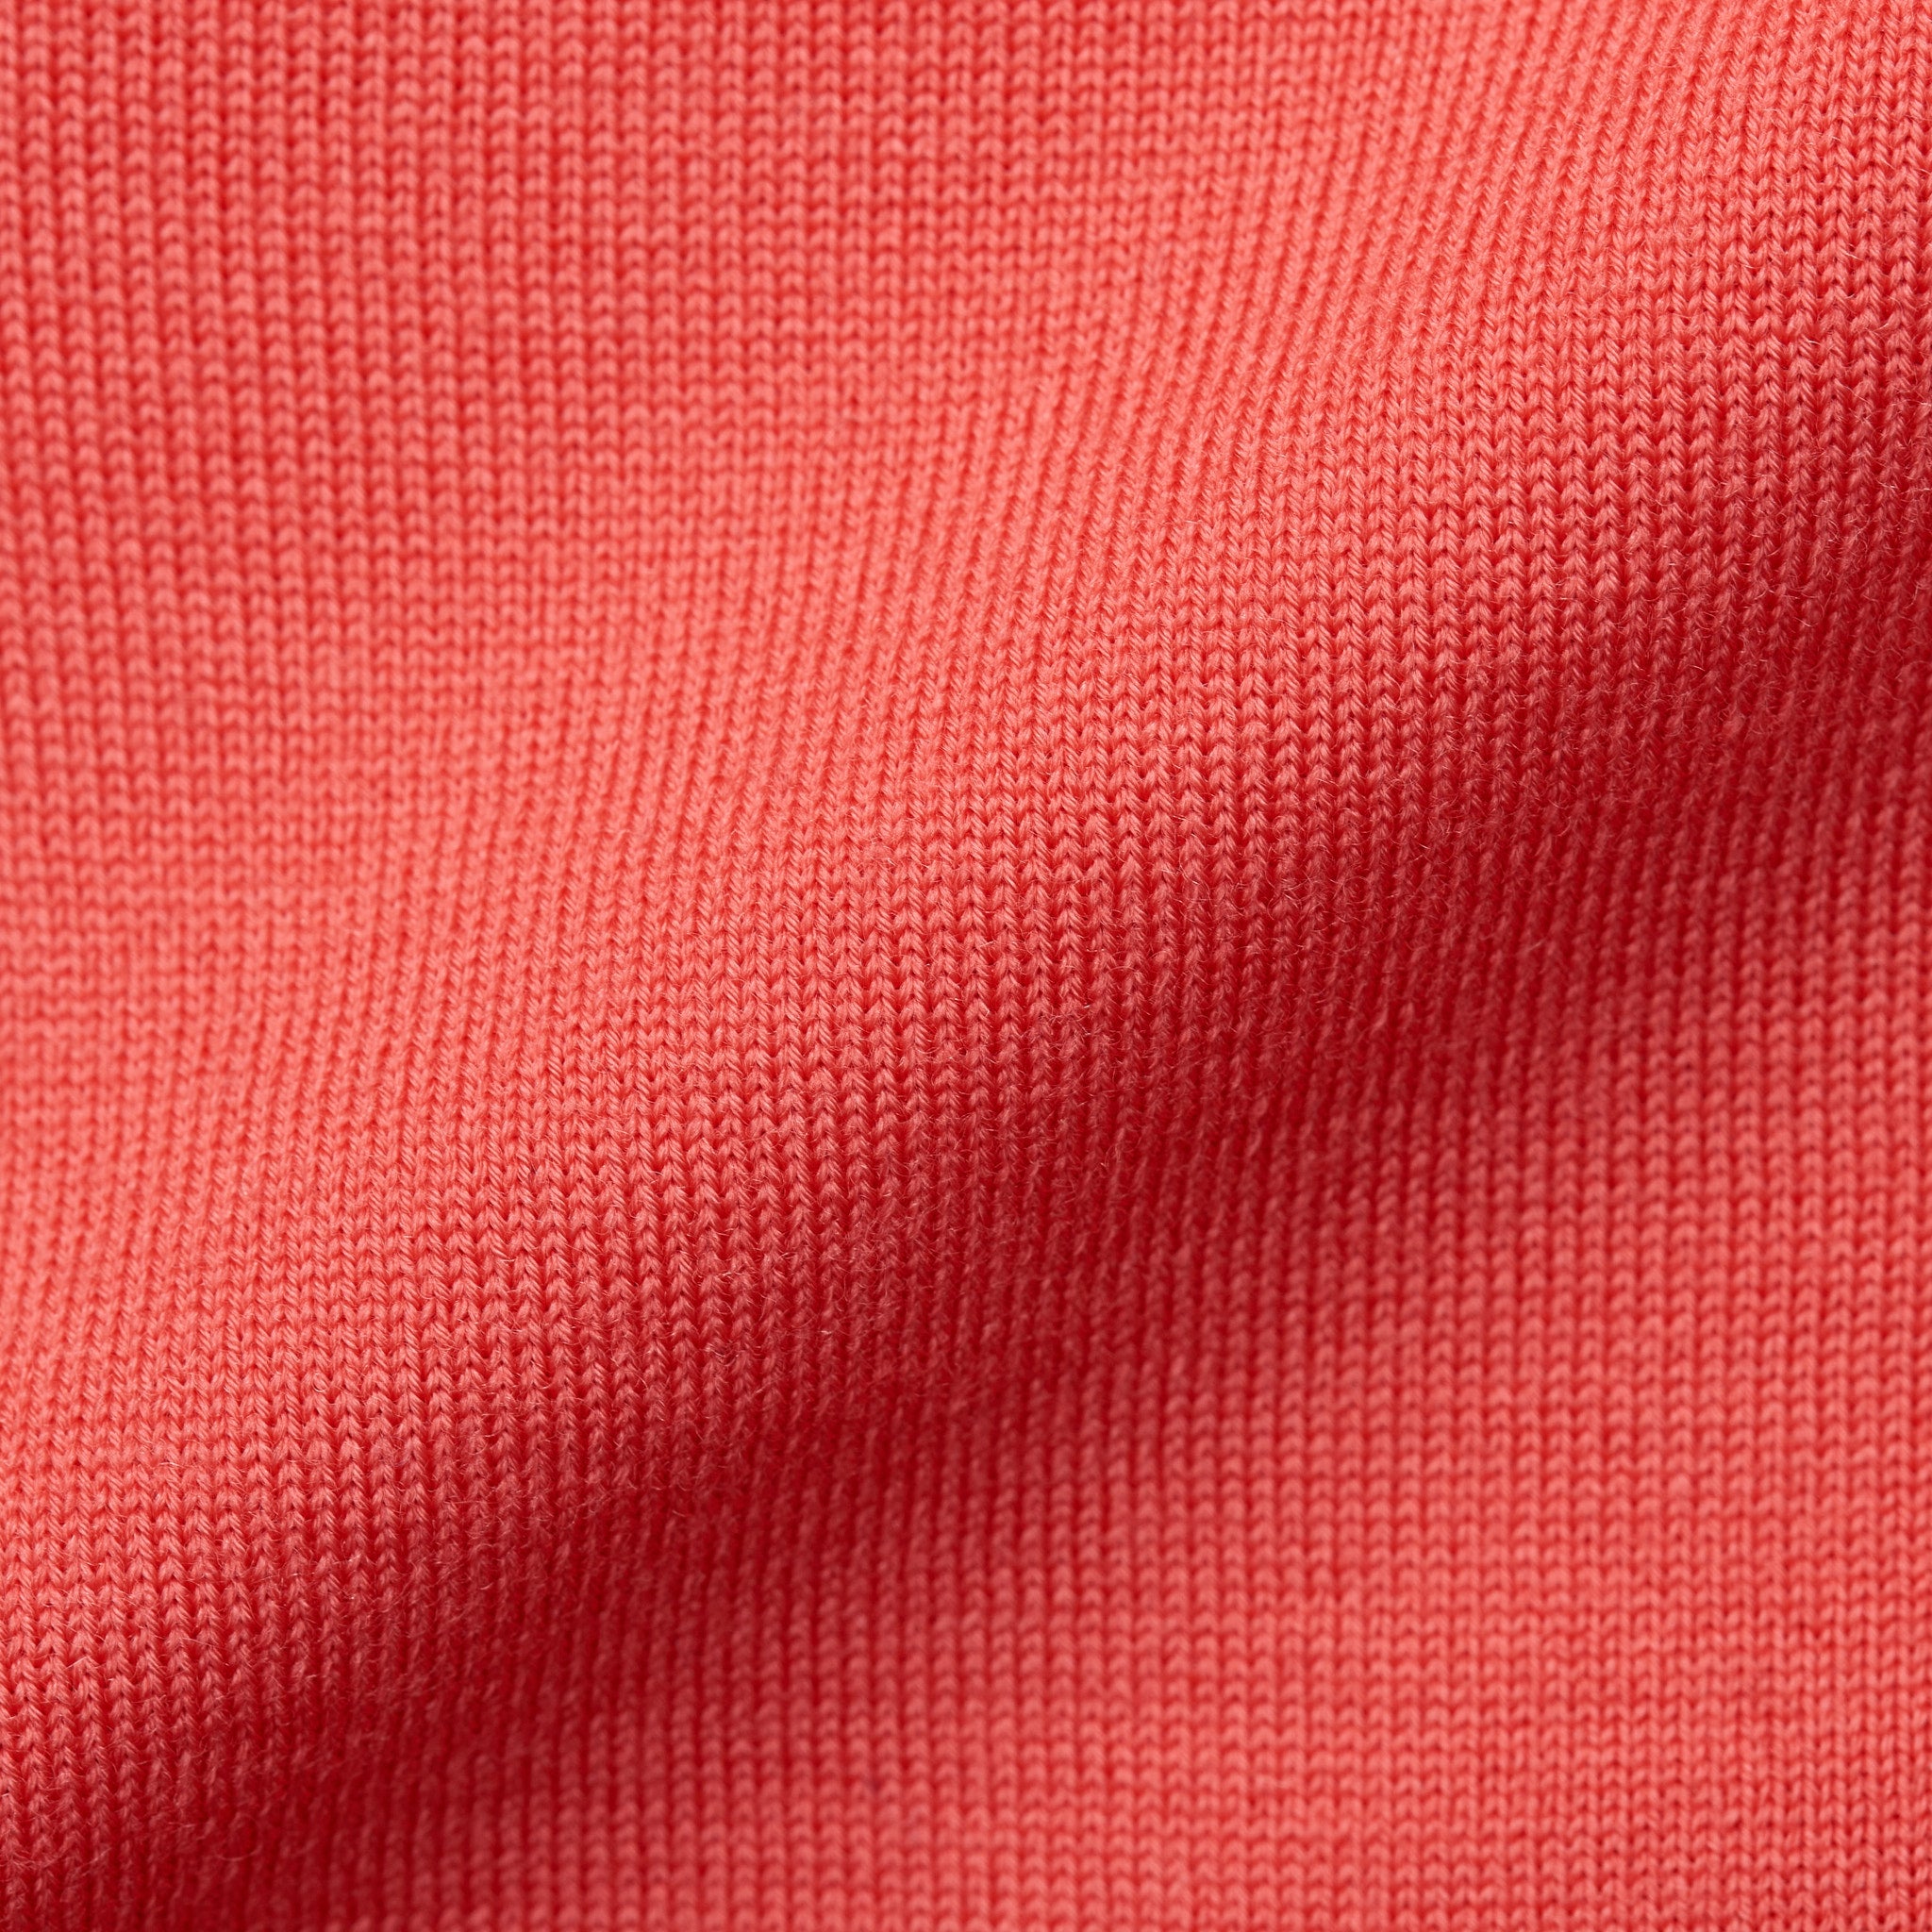 FEDELI Dark Pink 15 Micron Wool Super 160's V-Neck Sweater EU 50 NEW US M FEDELI